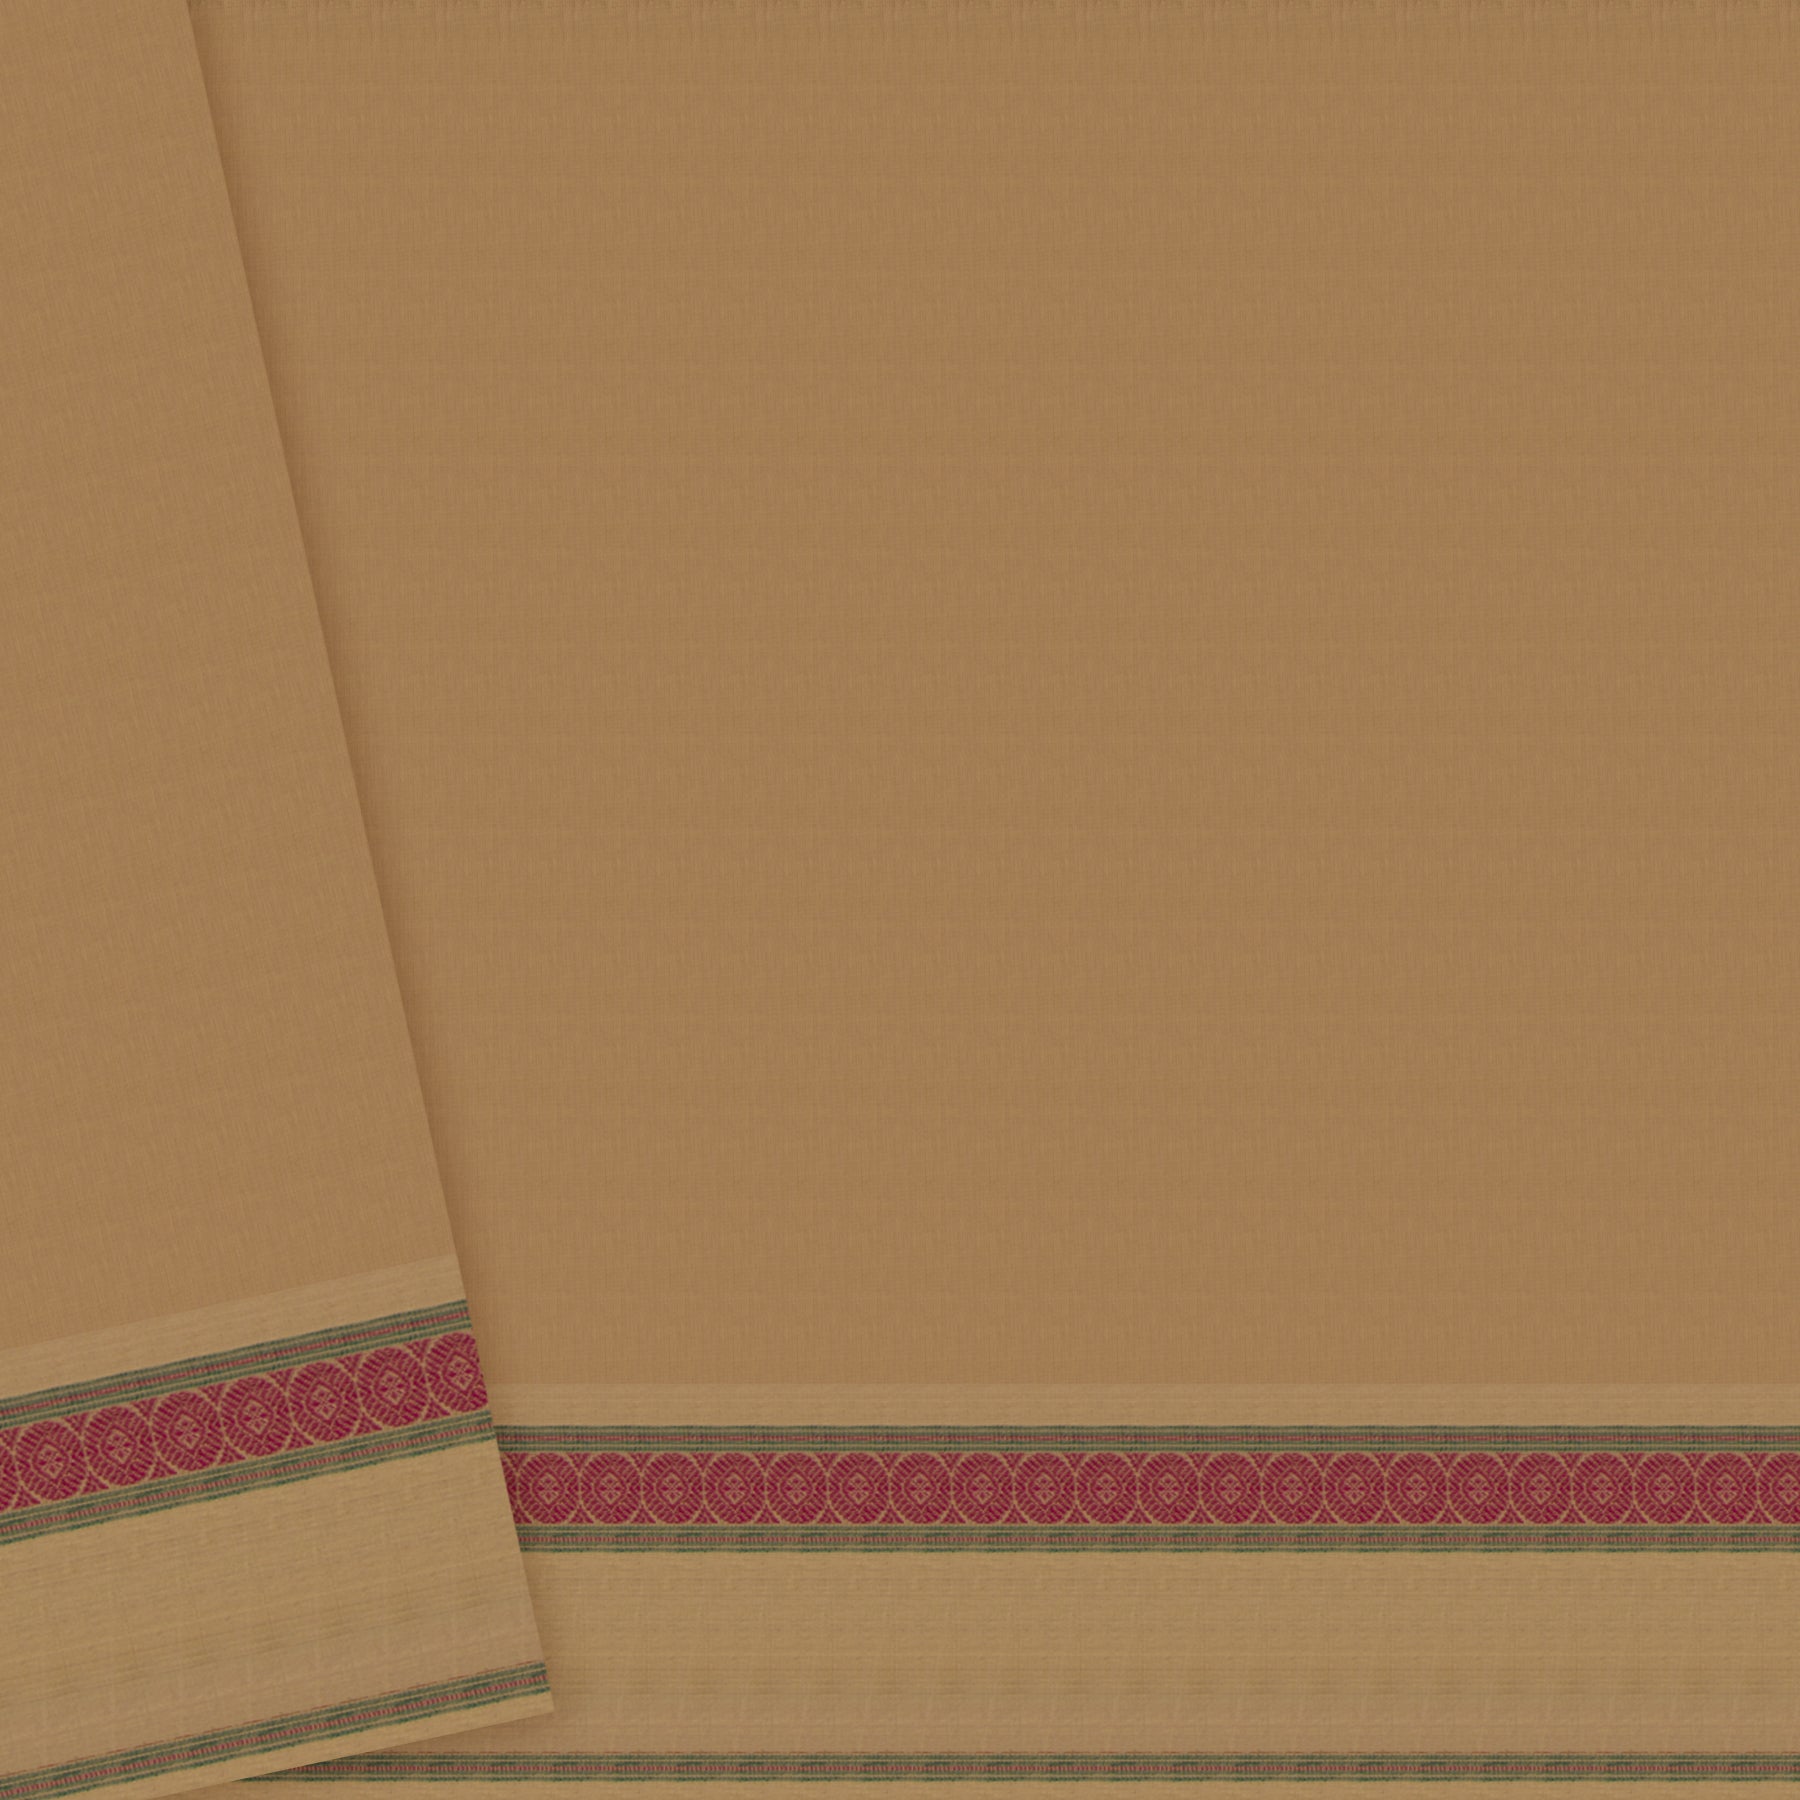 Kanakavalli Kanchi Cotton Sari 22-598-HS003-07688 - Blouse View